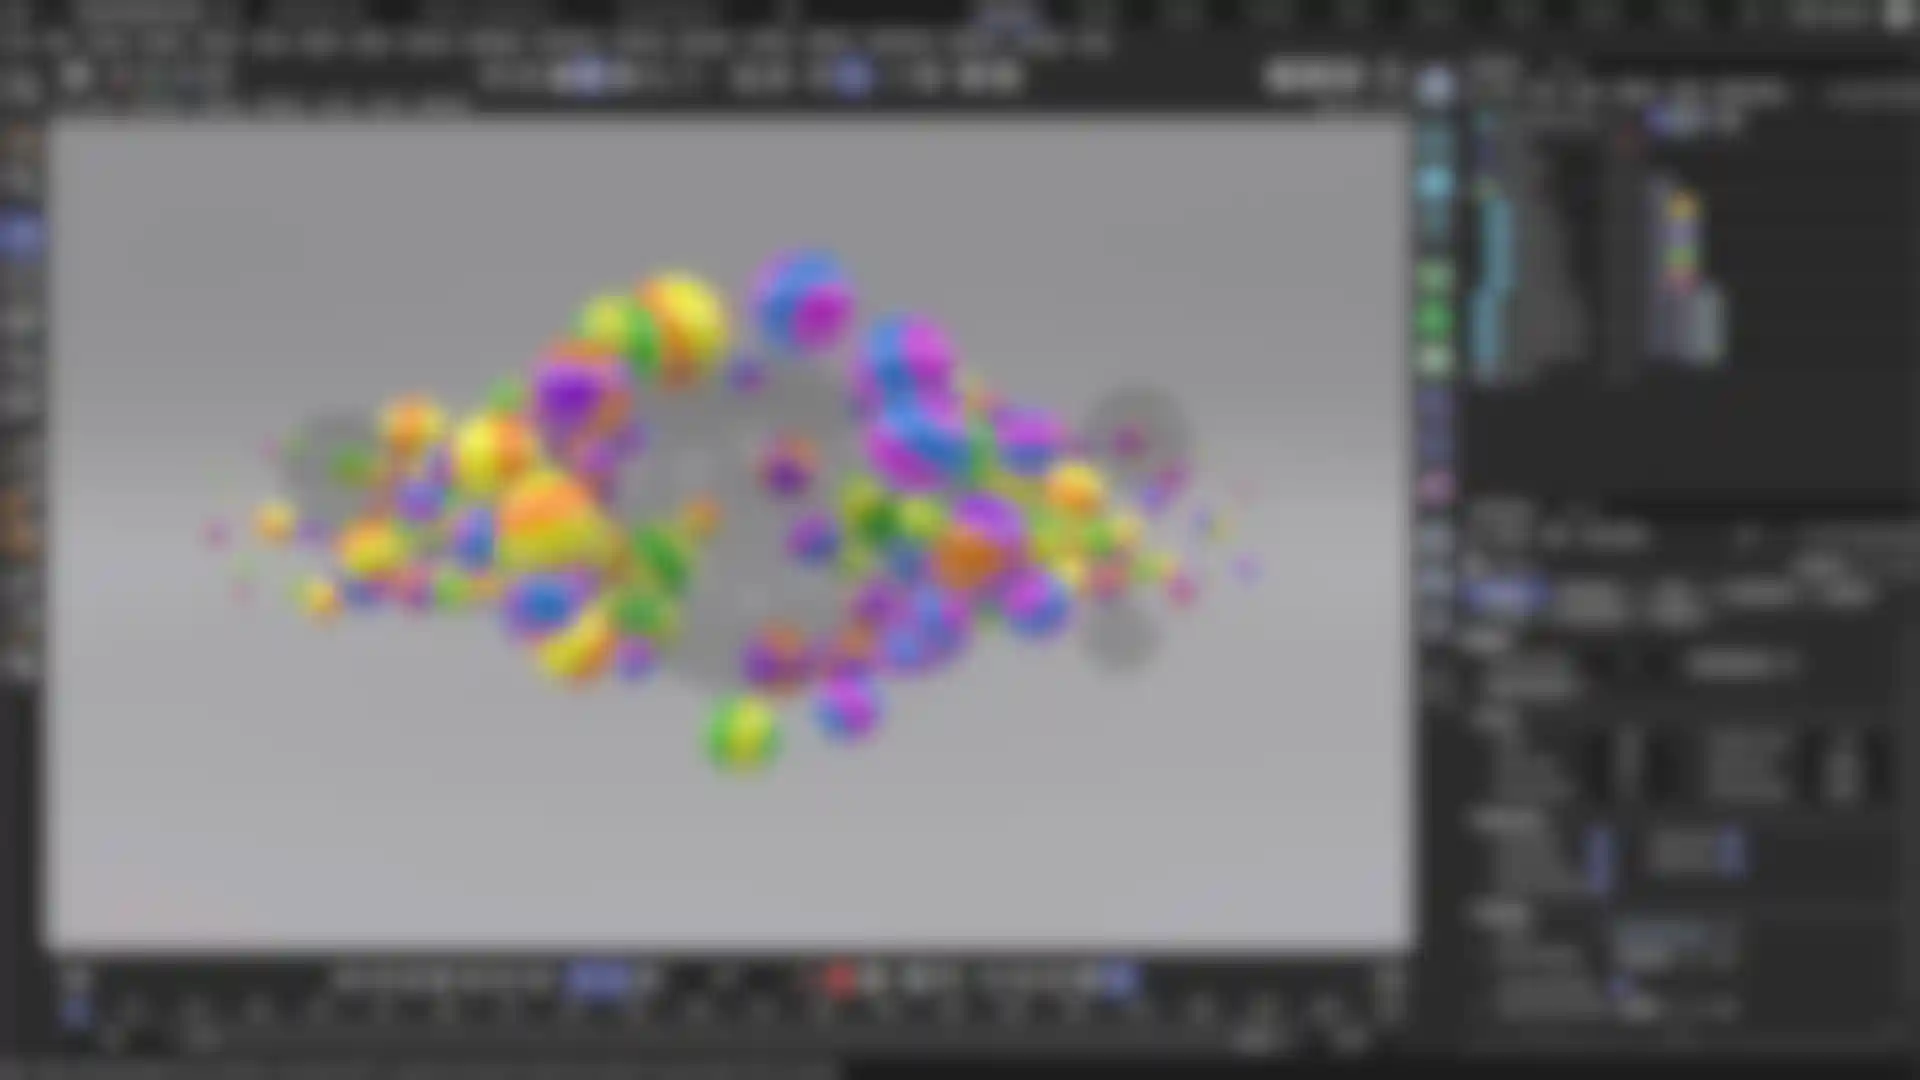 L’interfaccia del software di animazione 3D mostra dei modelli 3D con gli strumenti di animazione.